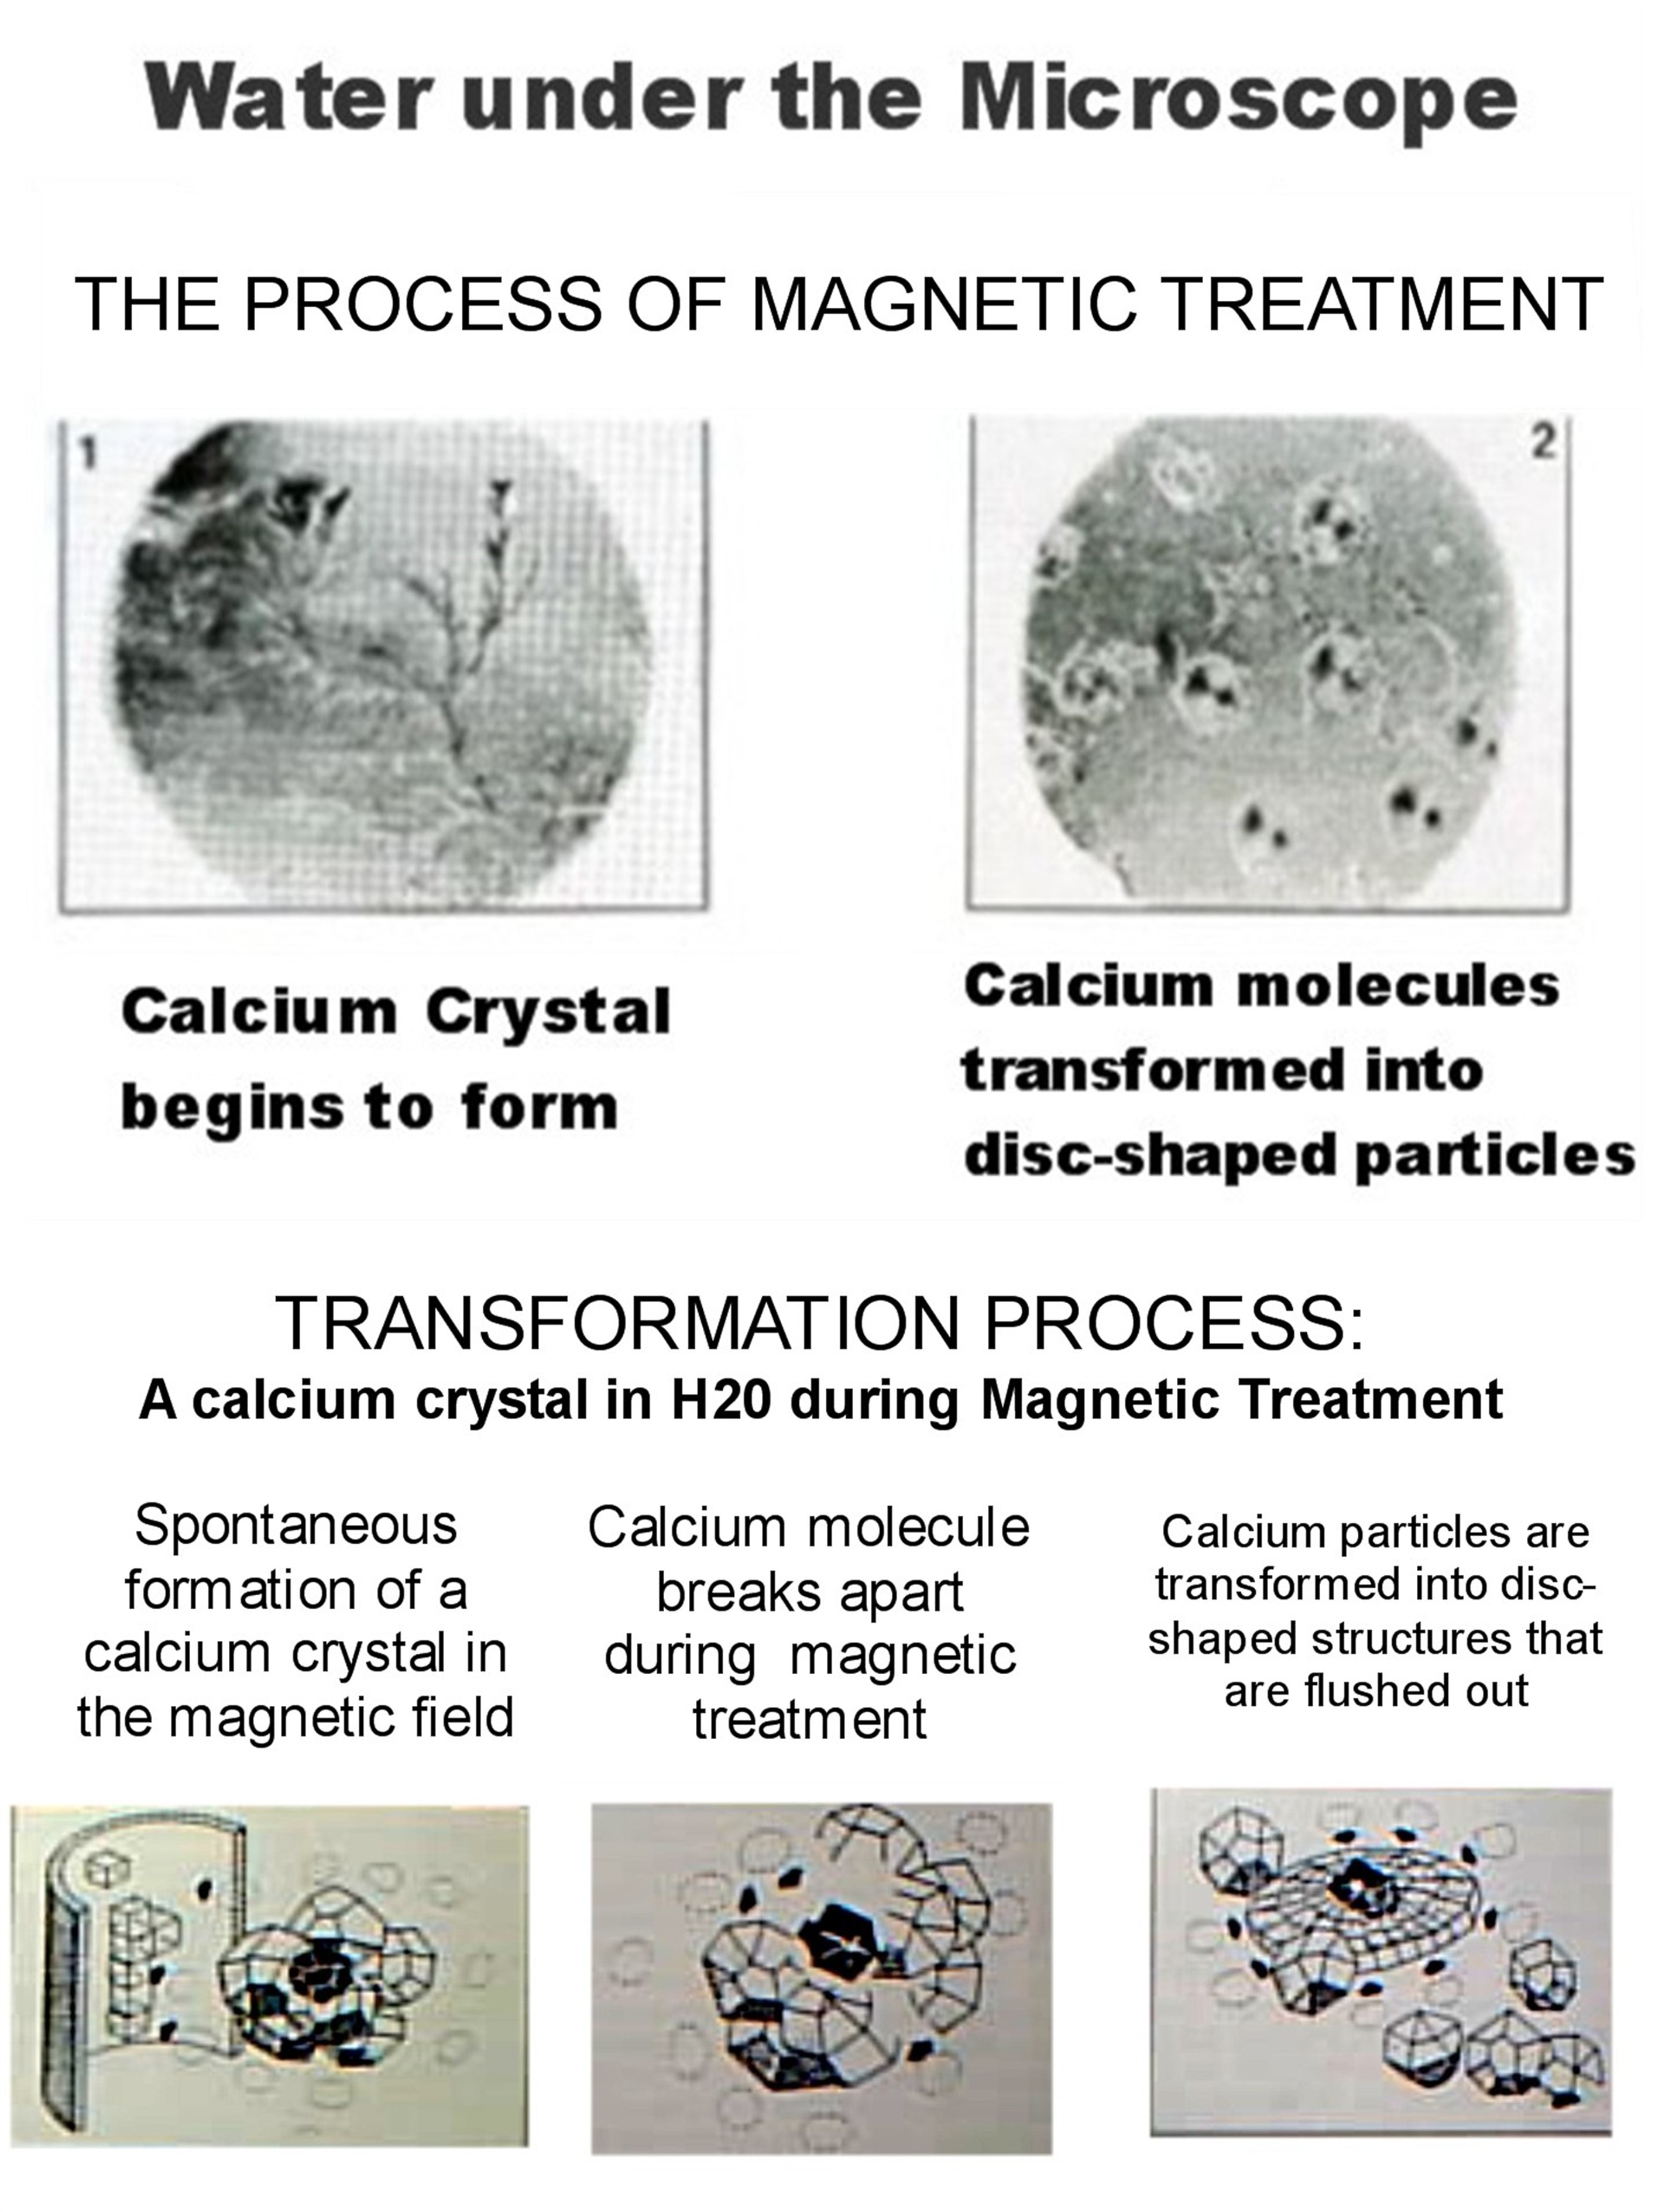 calcium crystals